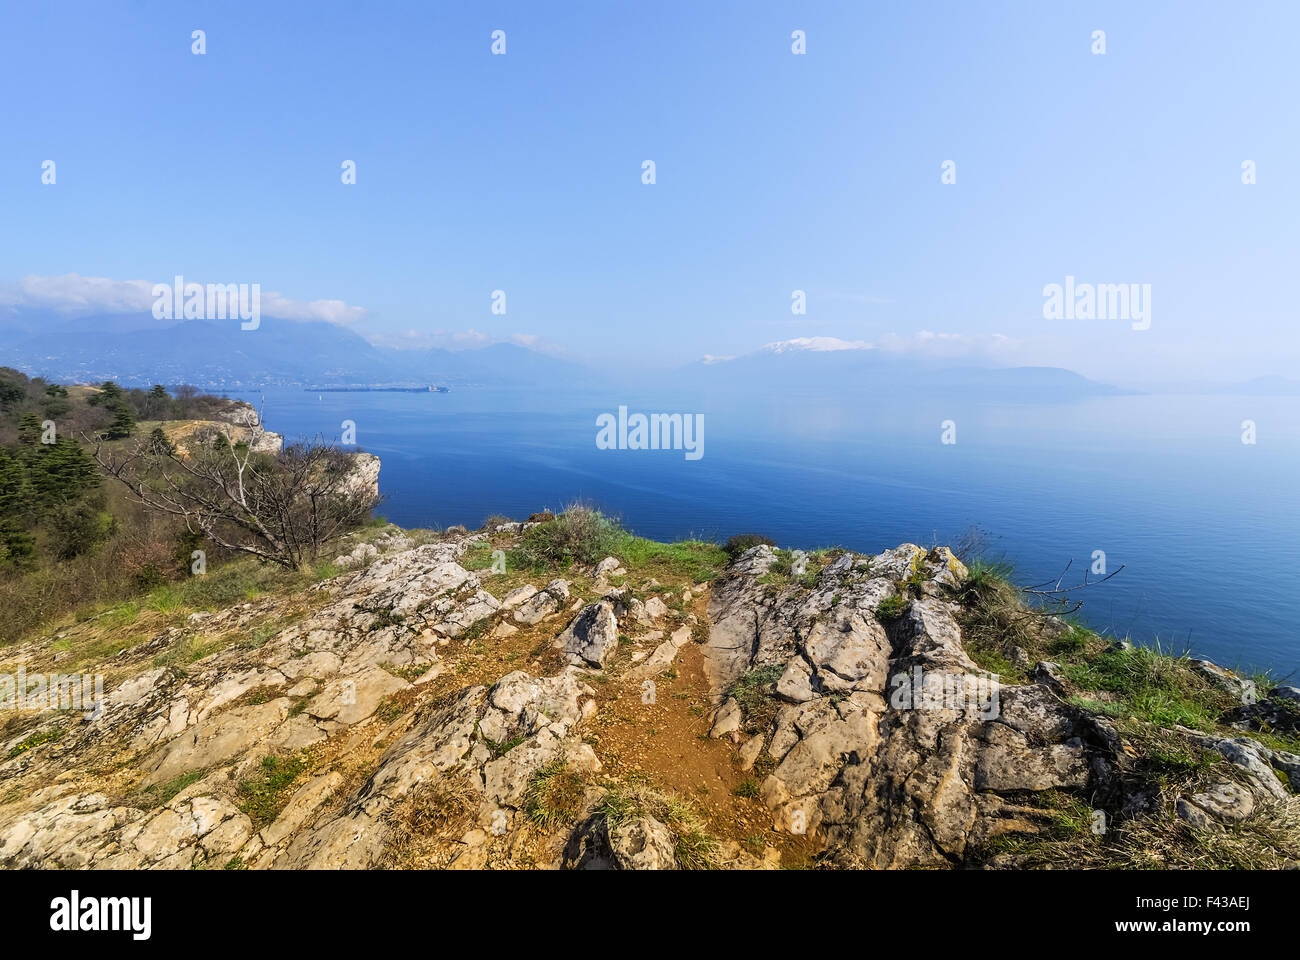 View from Manerba Lake Garda Stock Photo